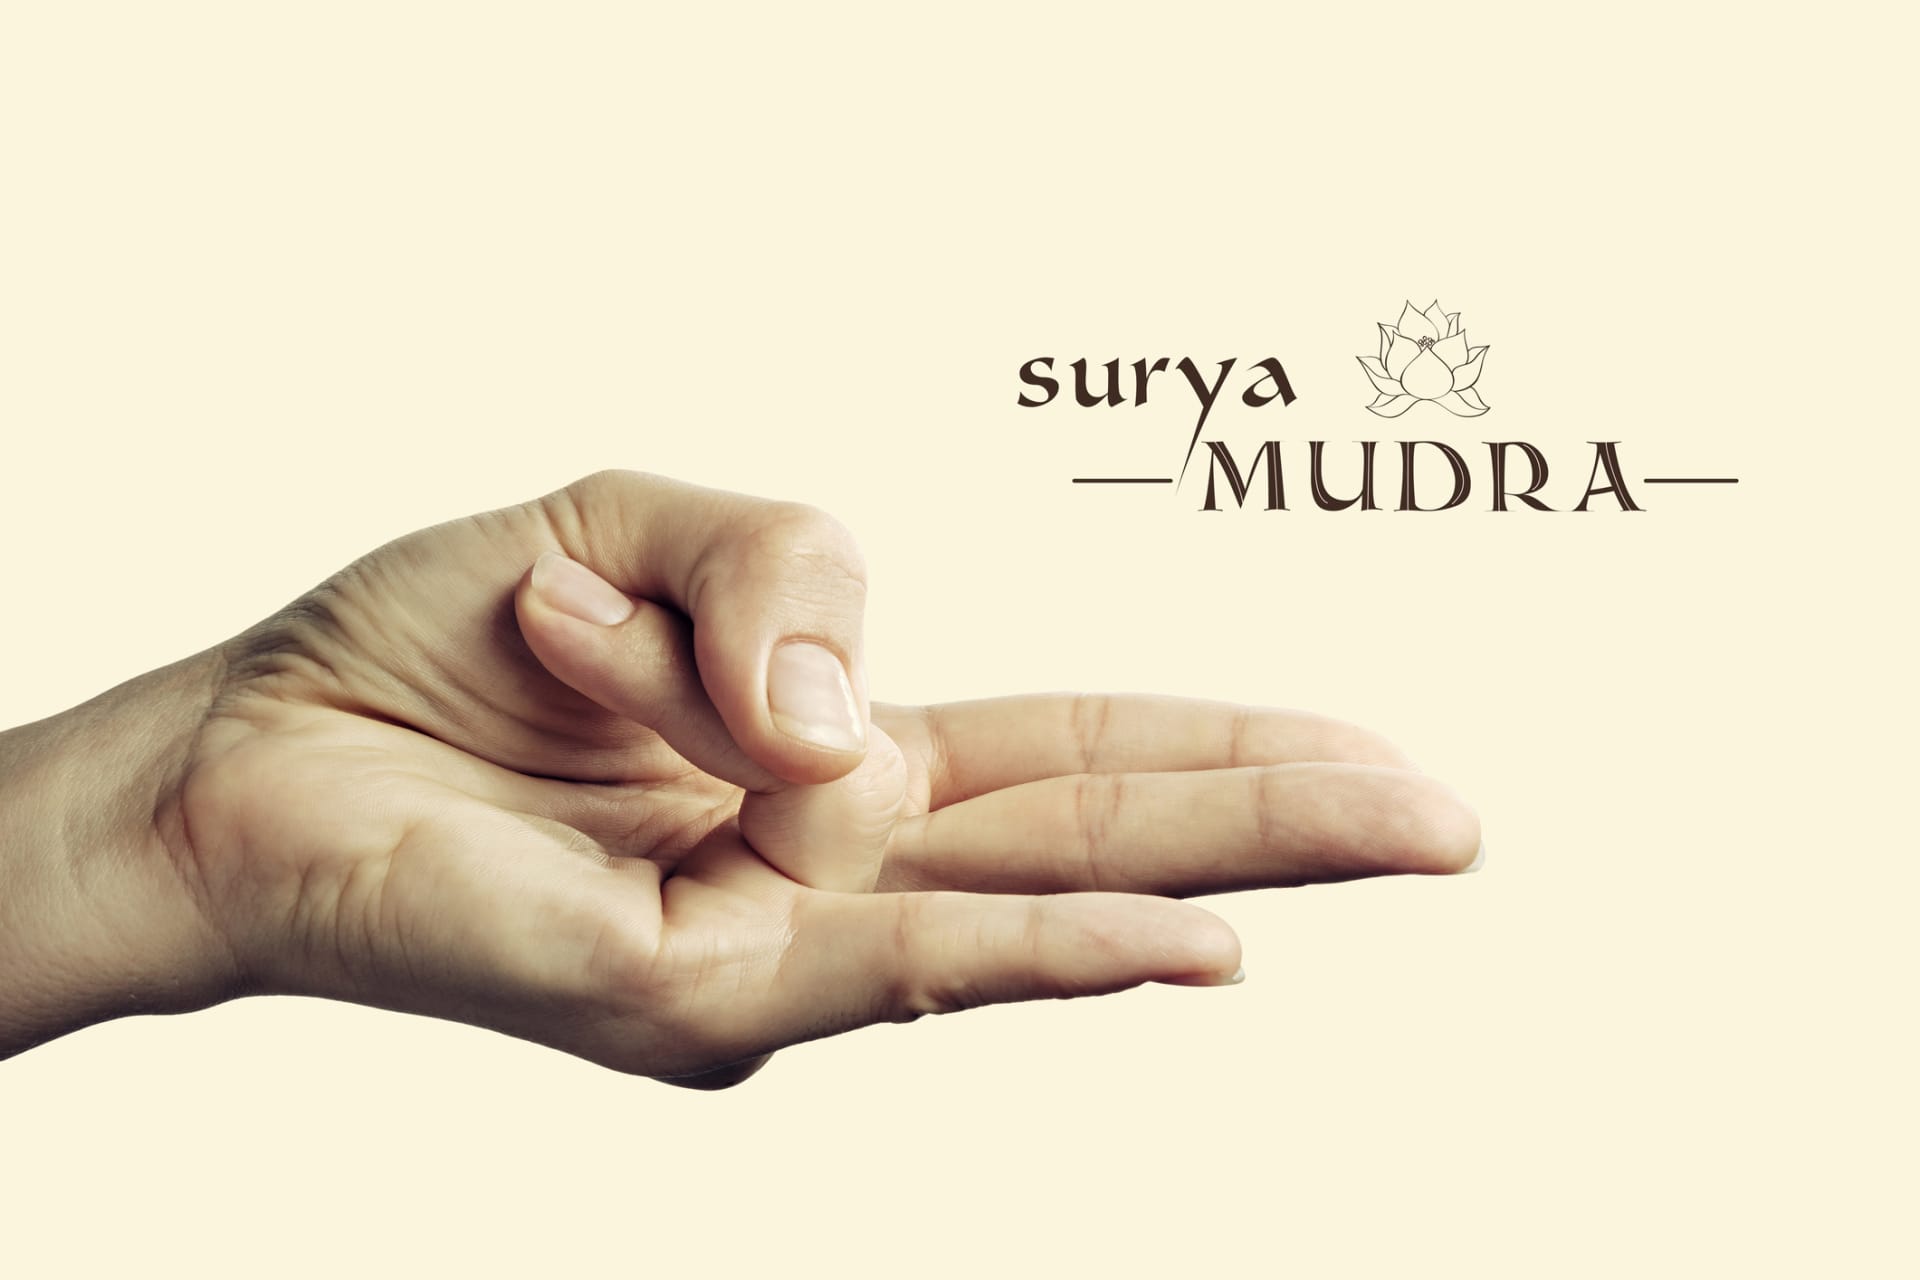 Surya Mudra pomáhá zmírnit stres a úzkost, stimuluje štítnou žlázu a zažívání a může i zmírnit přibývání na váze.